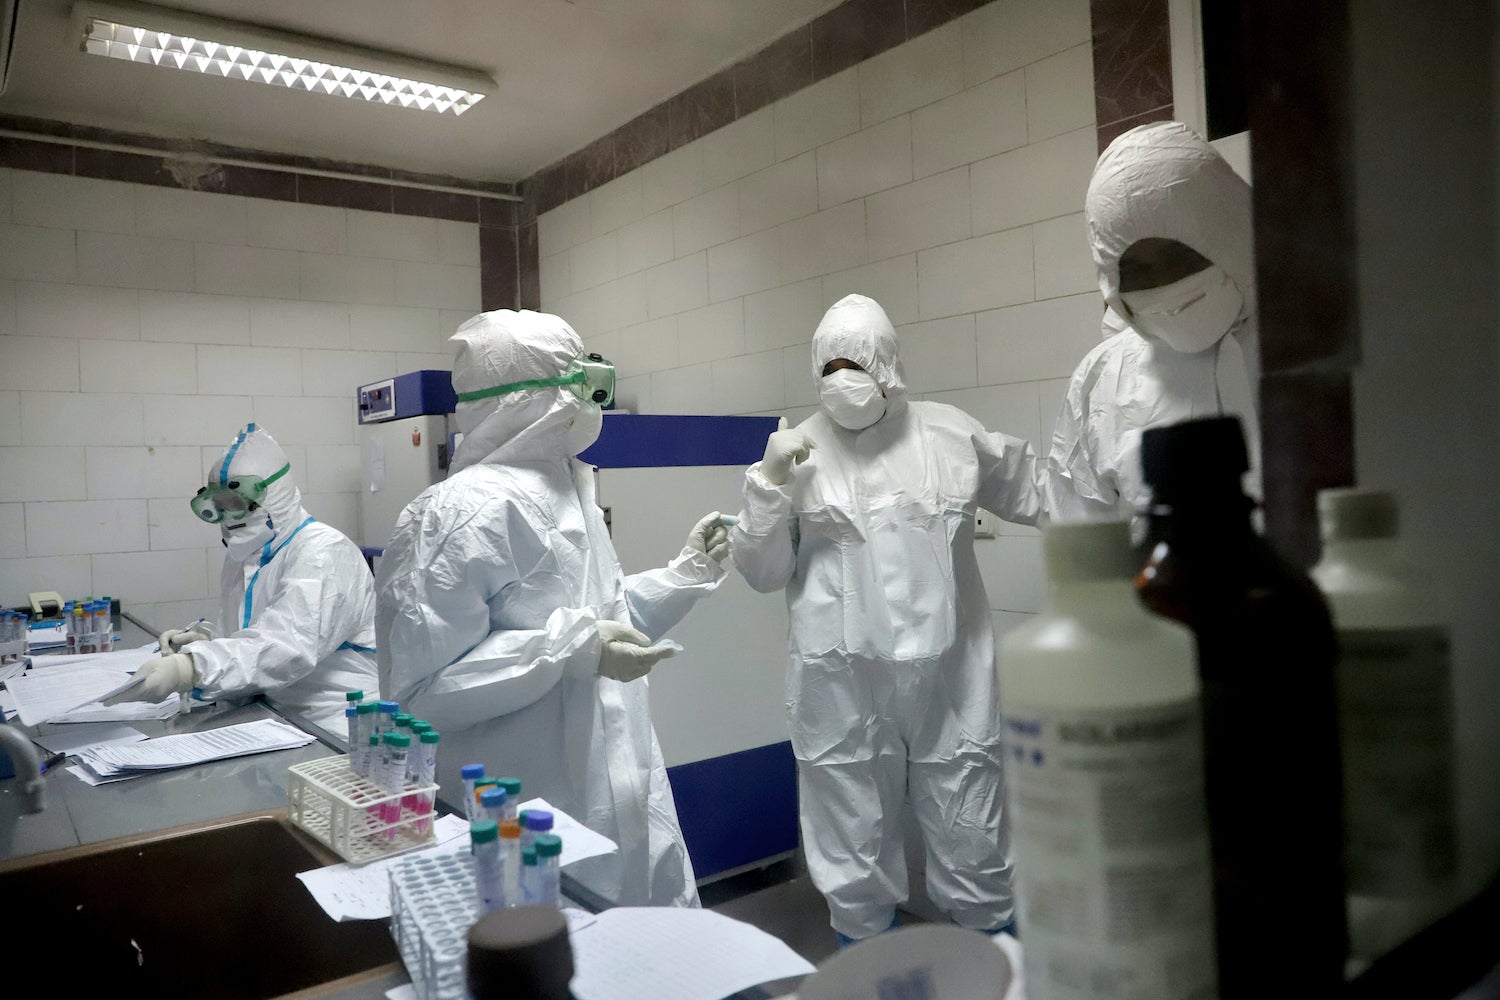 پیراپزشکان در یک آزمایشگاه که نمونه های گرفته شده از افراد مشکوک به ابتلا به ویروس جدید کورونا را آزمایش میکند مشغول به کار هستند، شهر اهواز در جنوب غربی ایران، 10 مارس 2020 